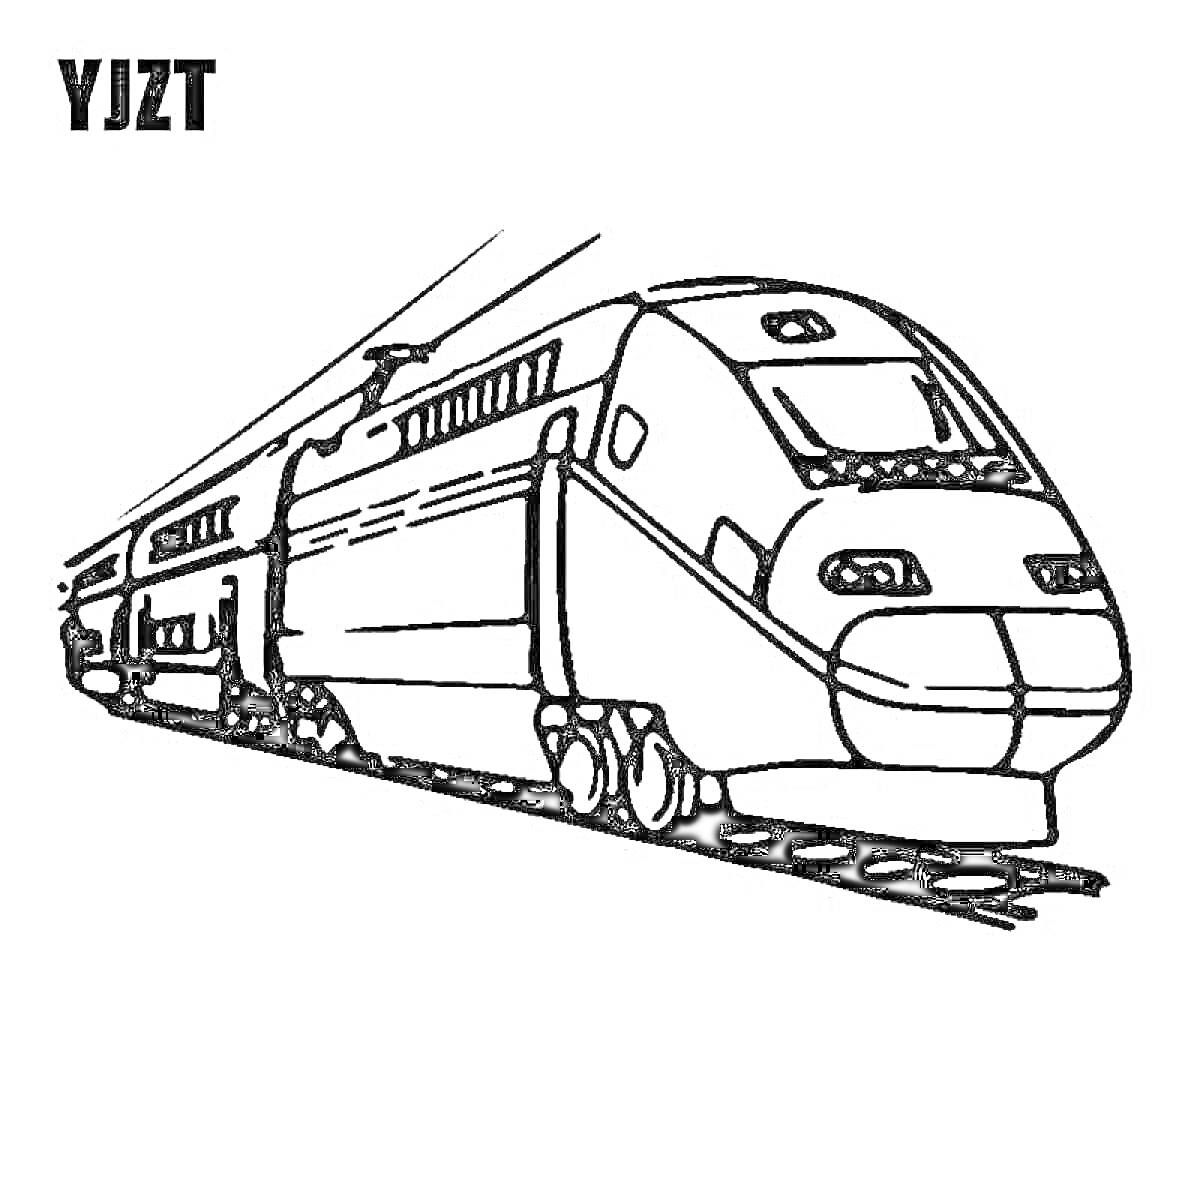 Раскраска Поезд Ласточка на рельсах с кабиной машиниста, окнами, колесами и линиями, обозначающими движение